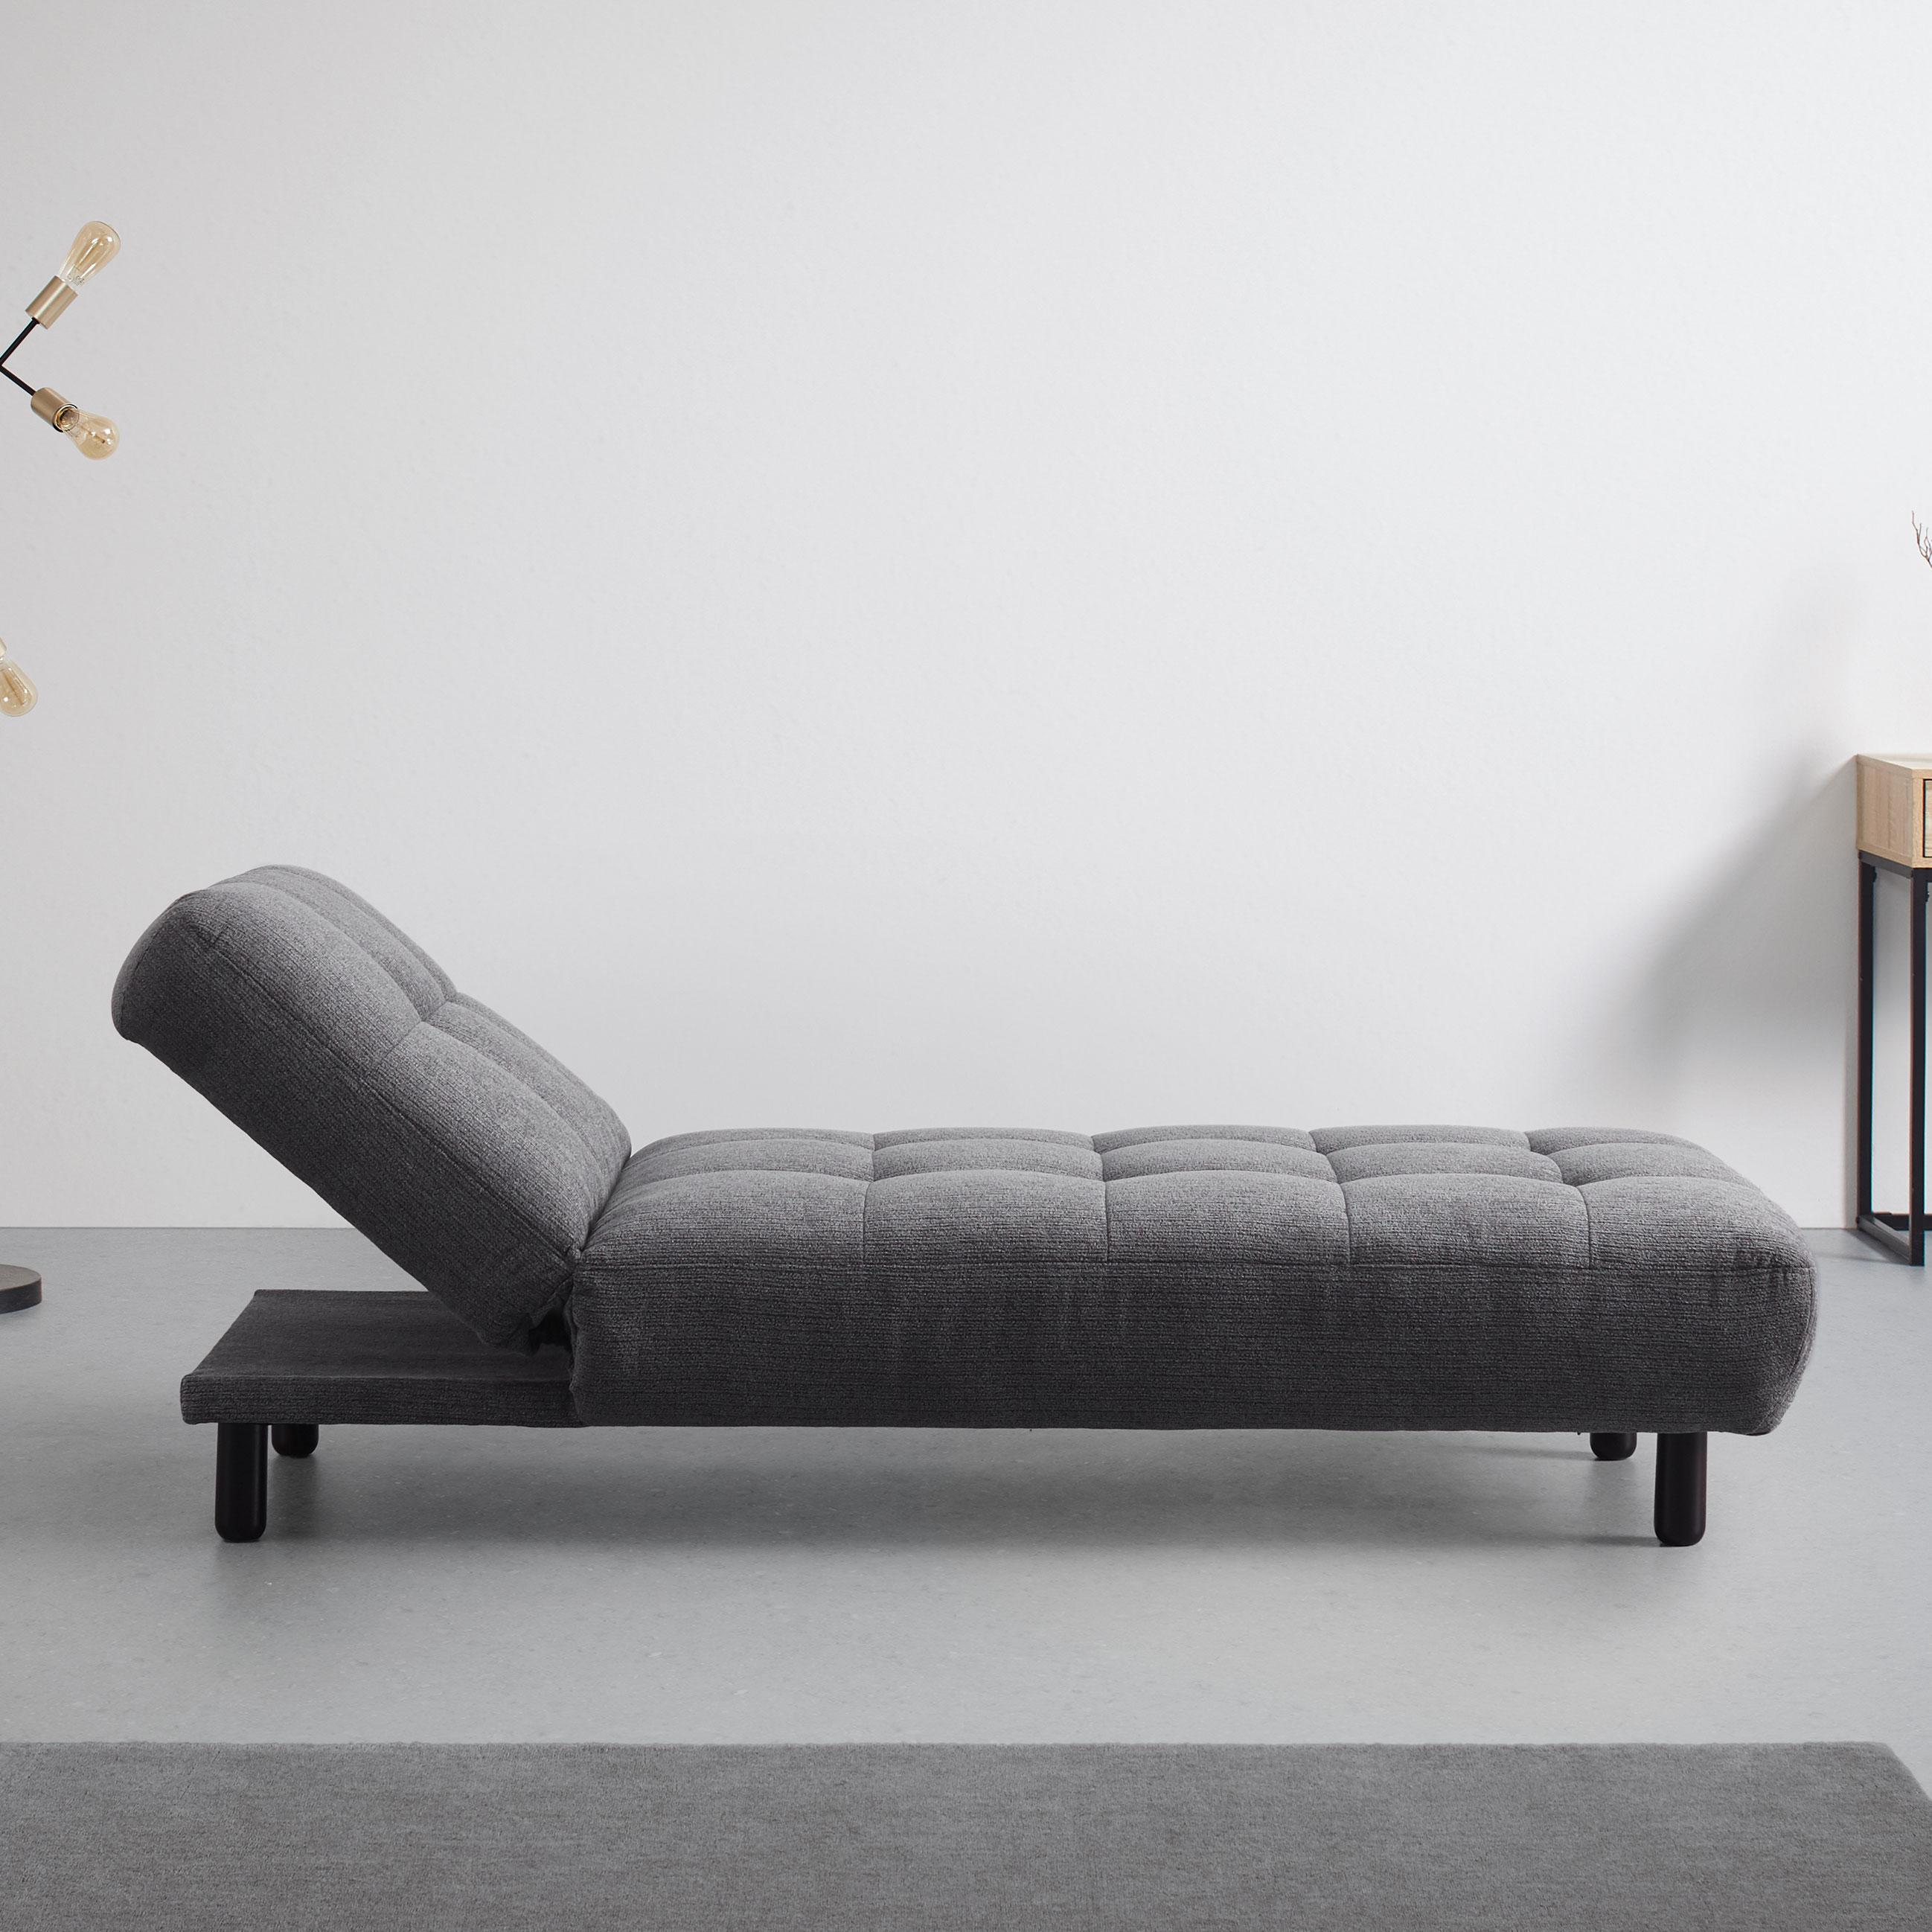 Relaxliege in grau "Camilla", Webstoff - Grau, MODERN, Holz/Textil (82/90/183cm) - Bessagi Home